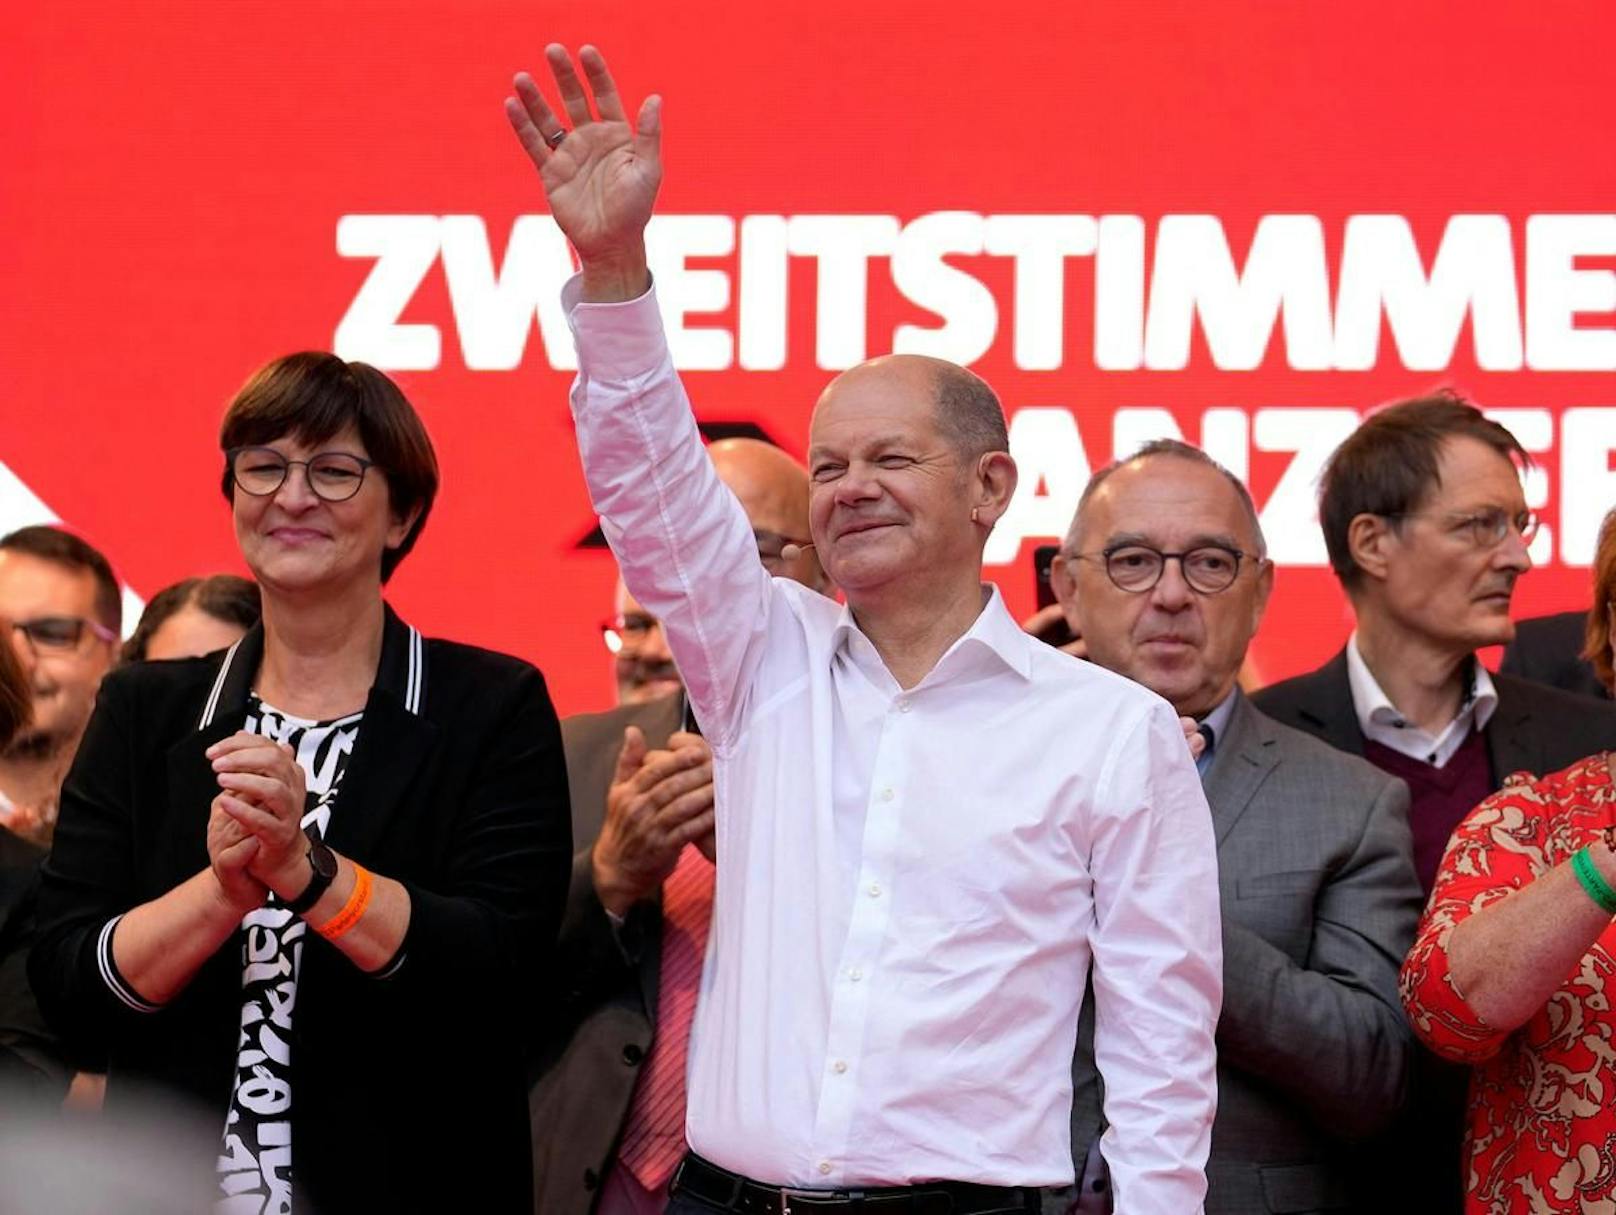 Bei der Kanzlerpräferenz führt Olaf Scholz mit 28 Prozent, Annalena Baerbock (Grüne) kommt auf 16 und Armin Laschet (CDU) auf 13 Prozent. 42 Prozent würden sich für keinen der drei Bewerber entscheiden.